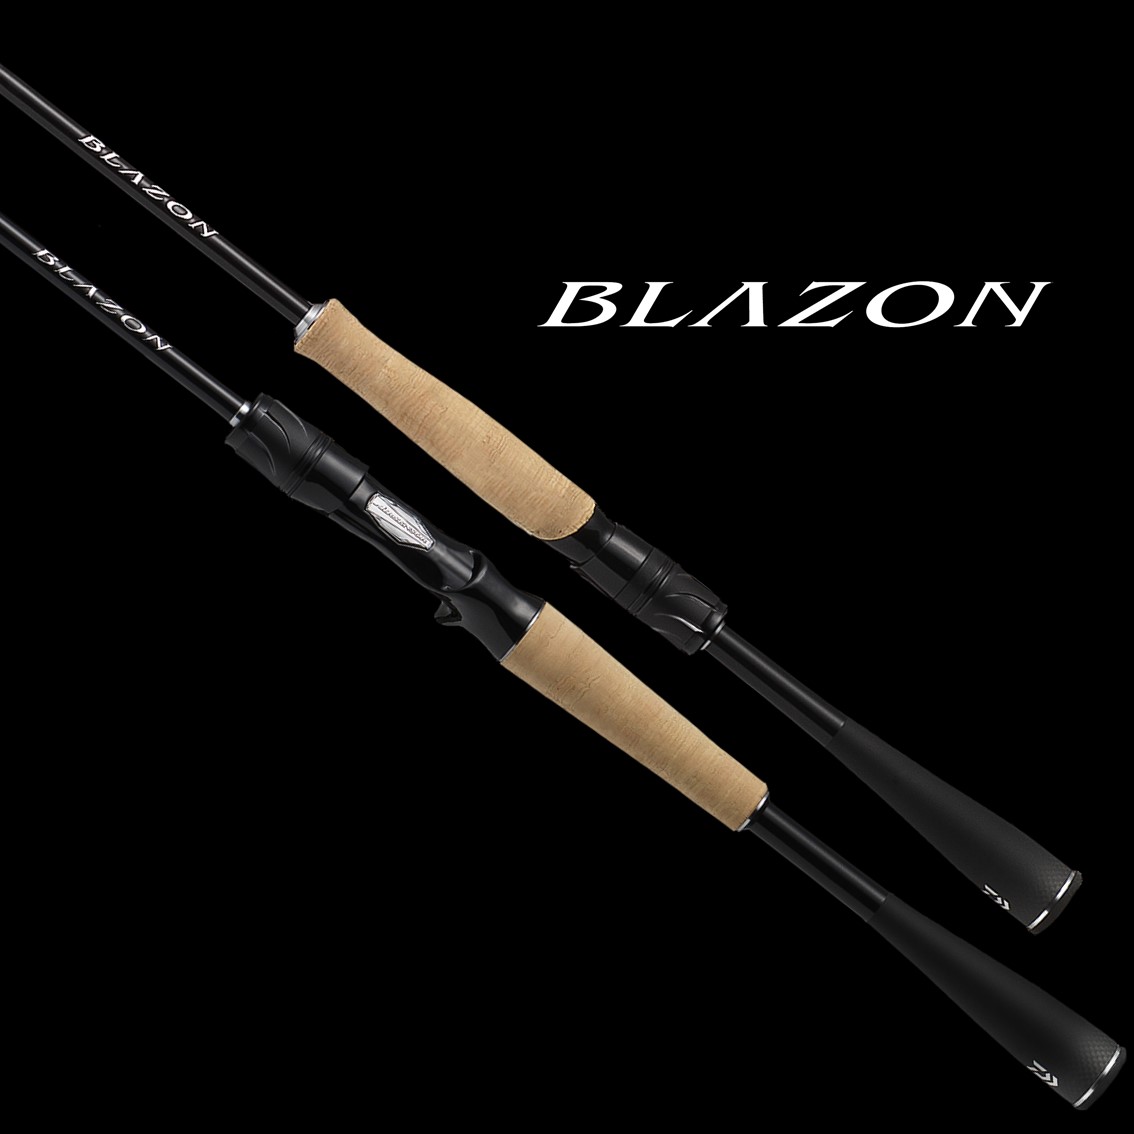 ダイワ ブレイゾン C70XH-2 (バスロッド ベイト) - 釣り具の販売、通販 